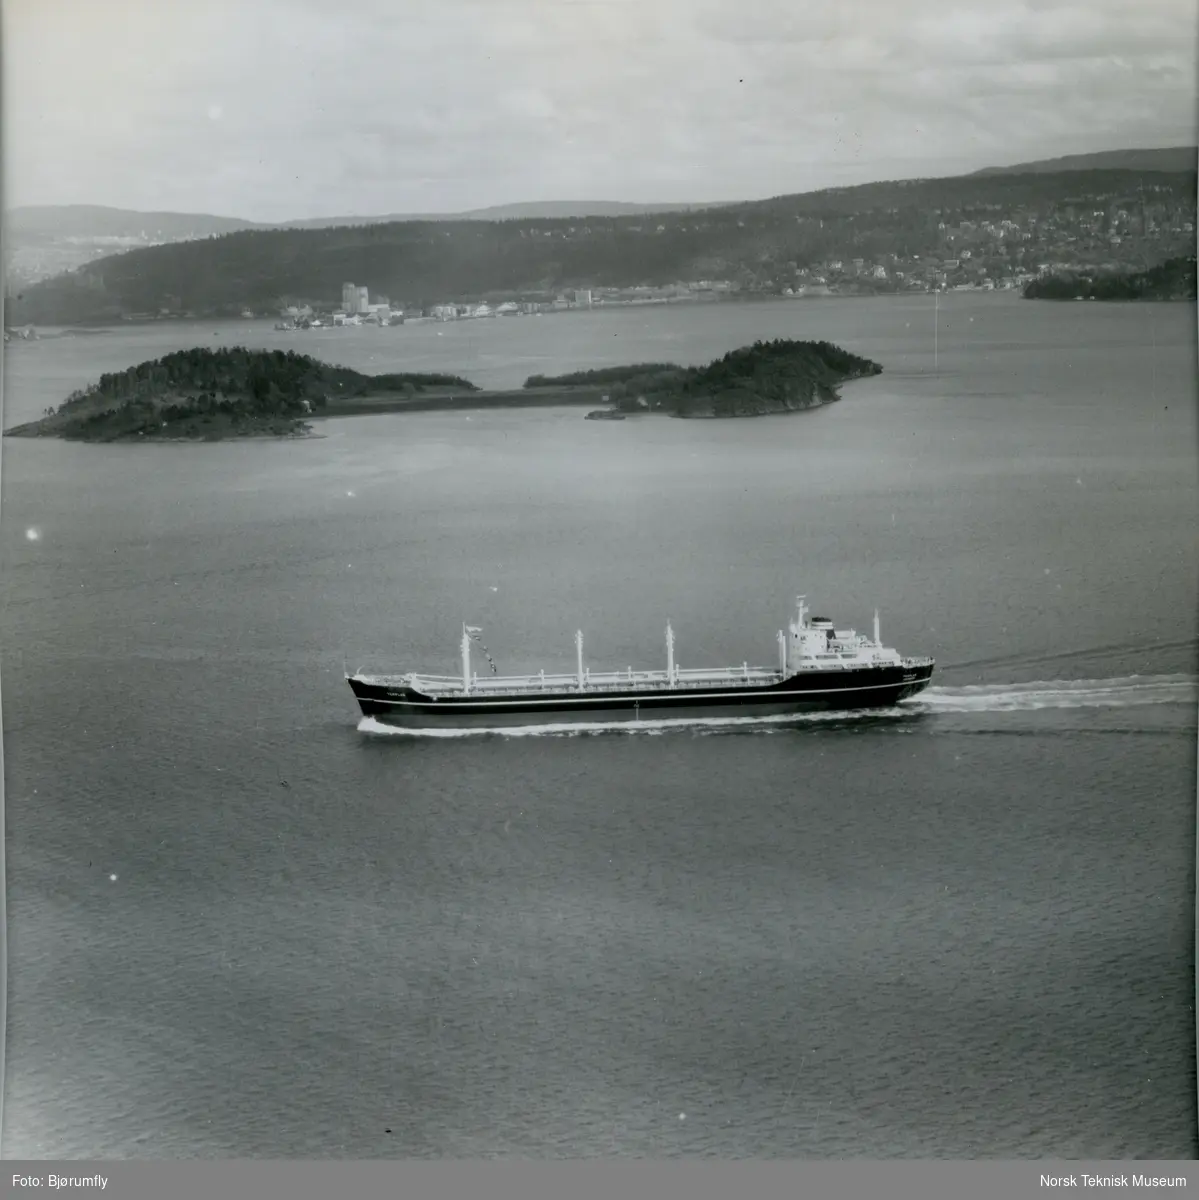 Flyfoto, tørrlasteskipet M/S Templar, B/N 524 i Oslofjorden. Skipet ble levert av Akers Mek. Verksted i 1962 til Wilh. Wilhelmsen.